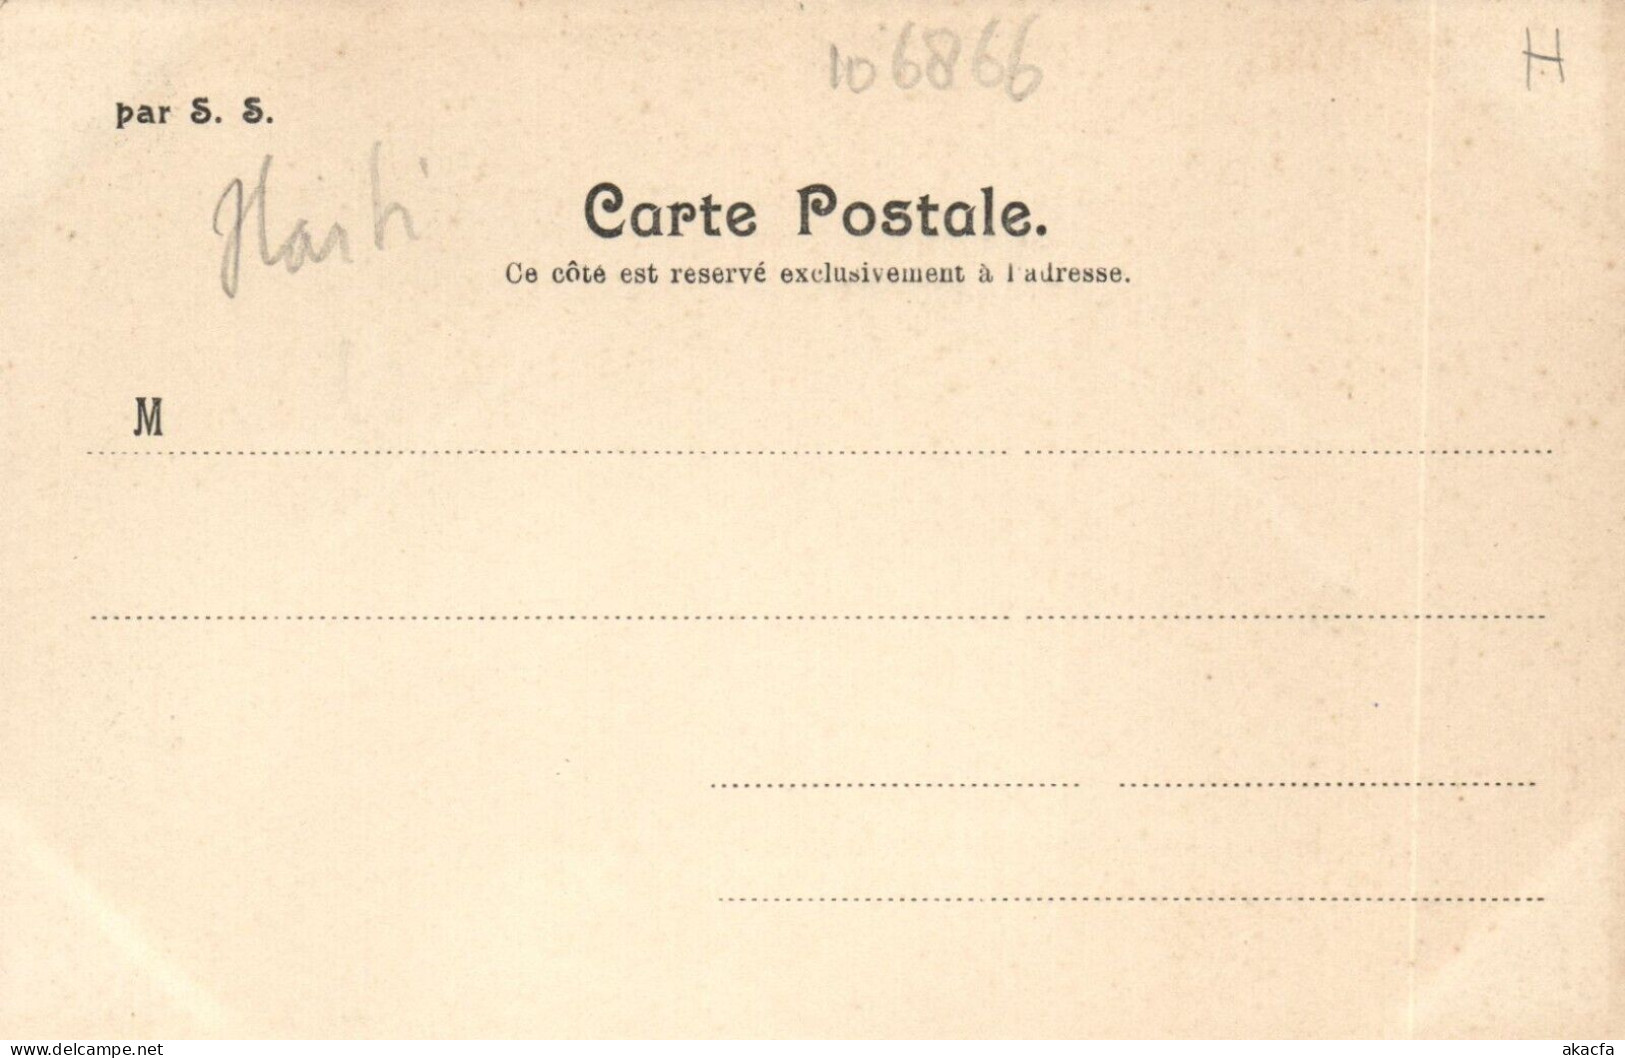 PC HAITI CARIBBEAN PORT-au-PRINCE PORTAIL ST. JOSEPH Vintage Postcard (b52117) - Haiti